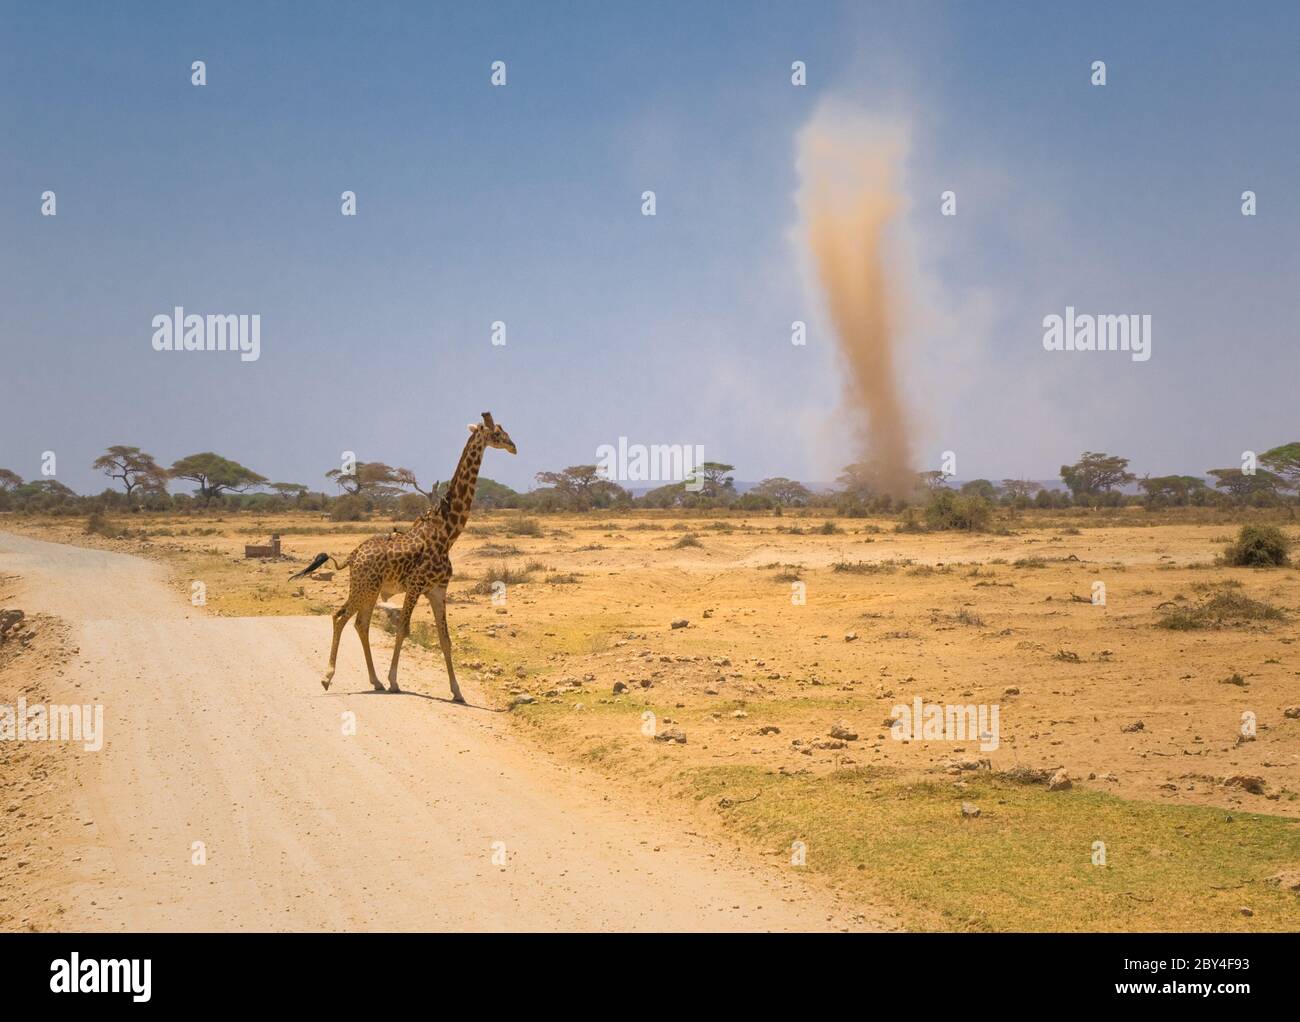 Girafe et tempête de sable dans le parc national Amboseli, Kenya Banque D'Images